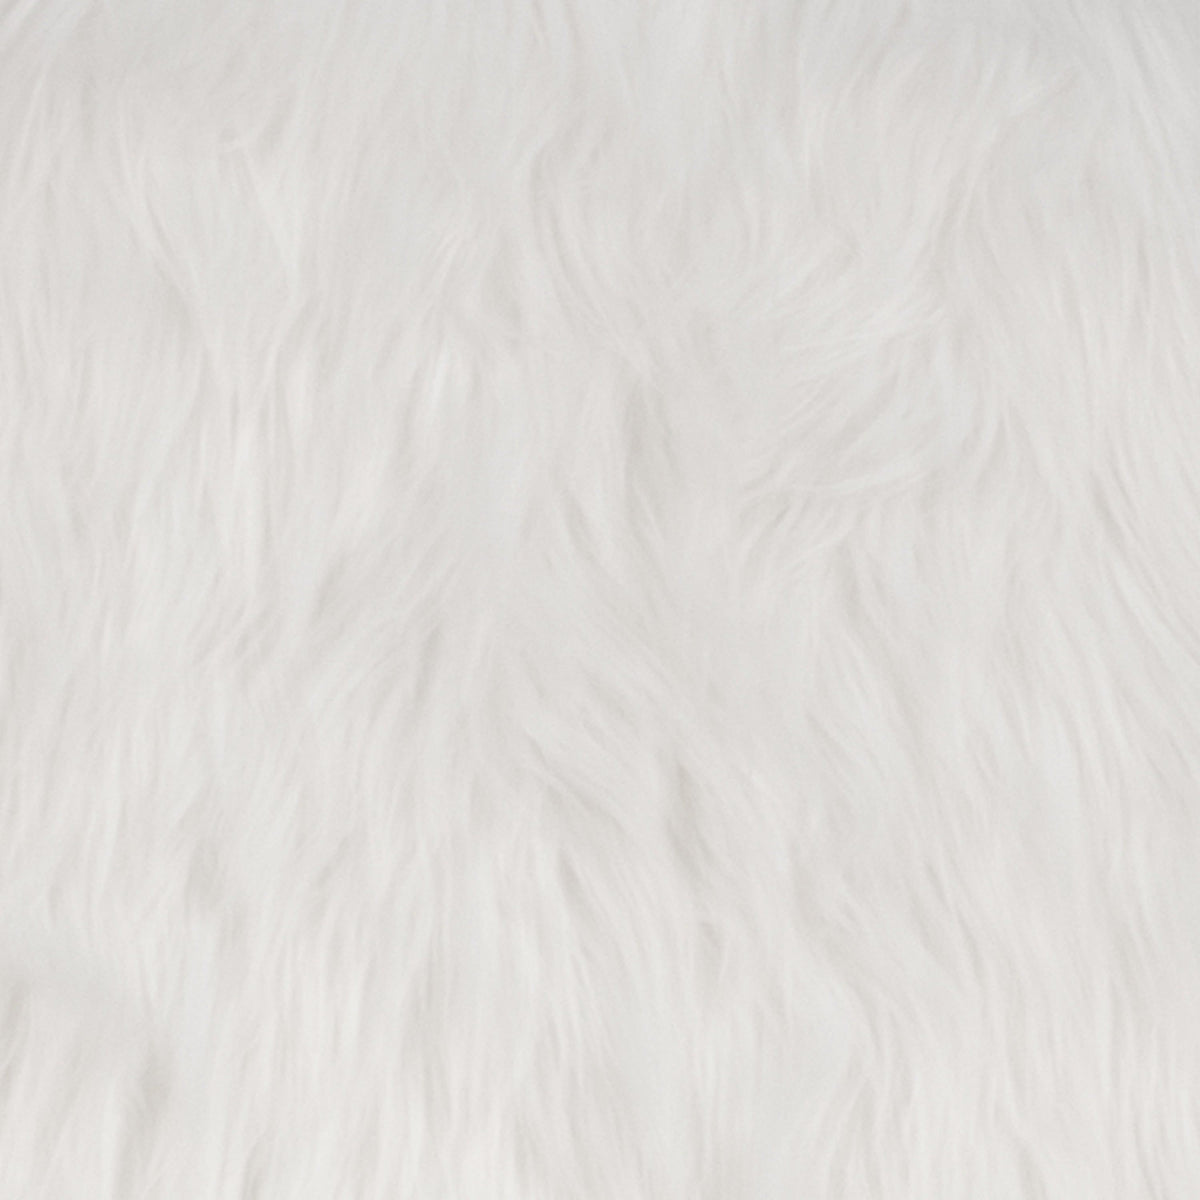 White |#| Shaggy Dog White Accent Chair - Dorm Furniture - Retro Chair - Faux Fur Chair